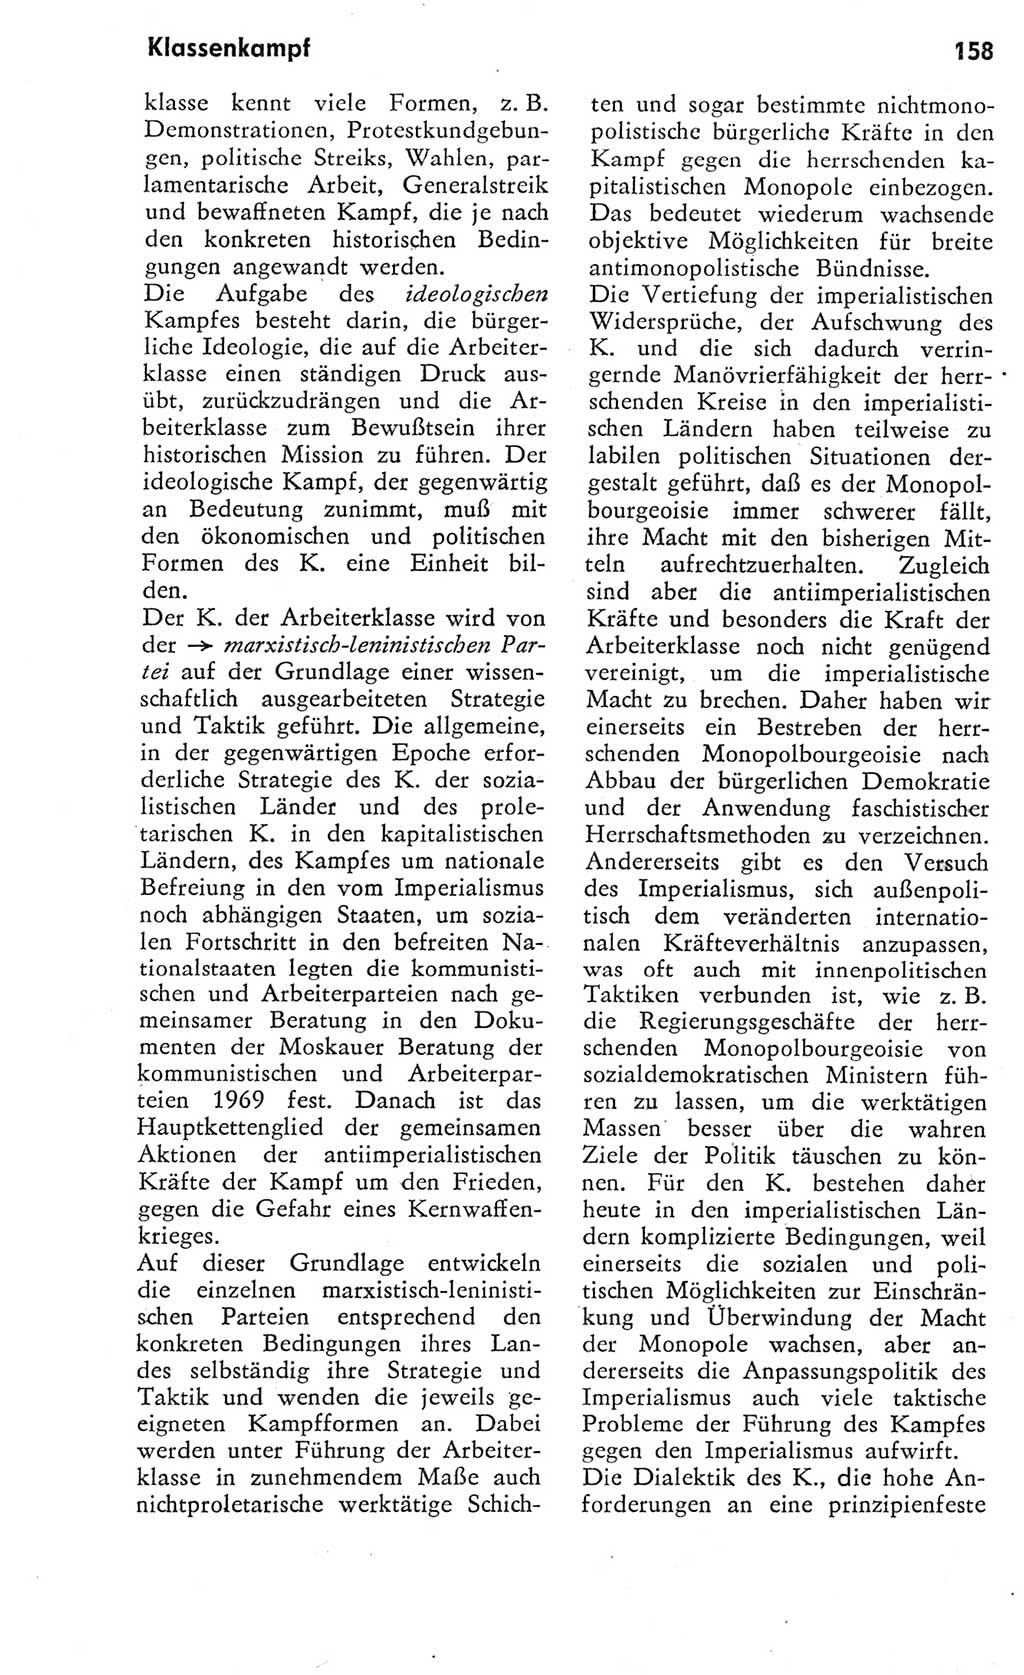 Kleines Wörterbuch der marxistisch-leninistischen Philosophie [Deutsche Demokratische Republik (DDR)] 1975, Seite 158 (Kl. Wb. ML Phil. DDR 1975, S. 158)